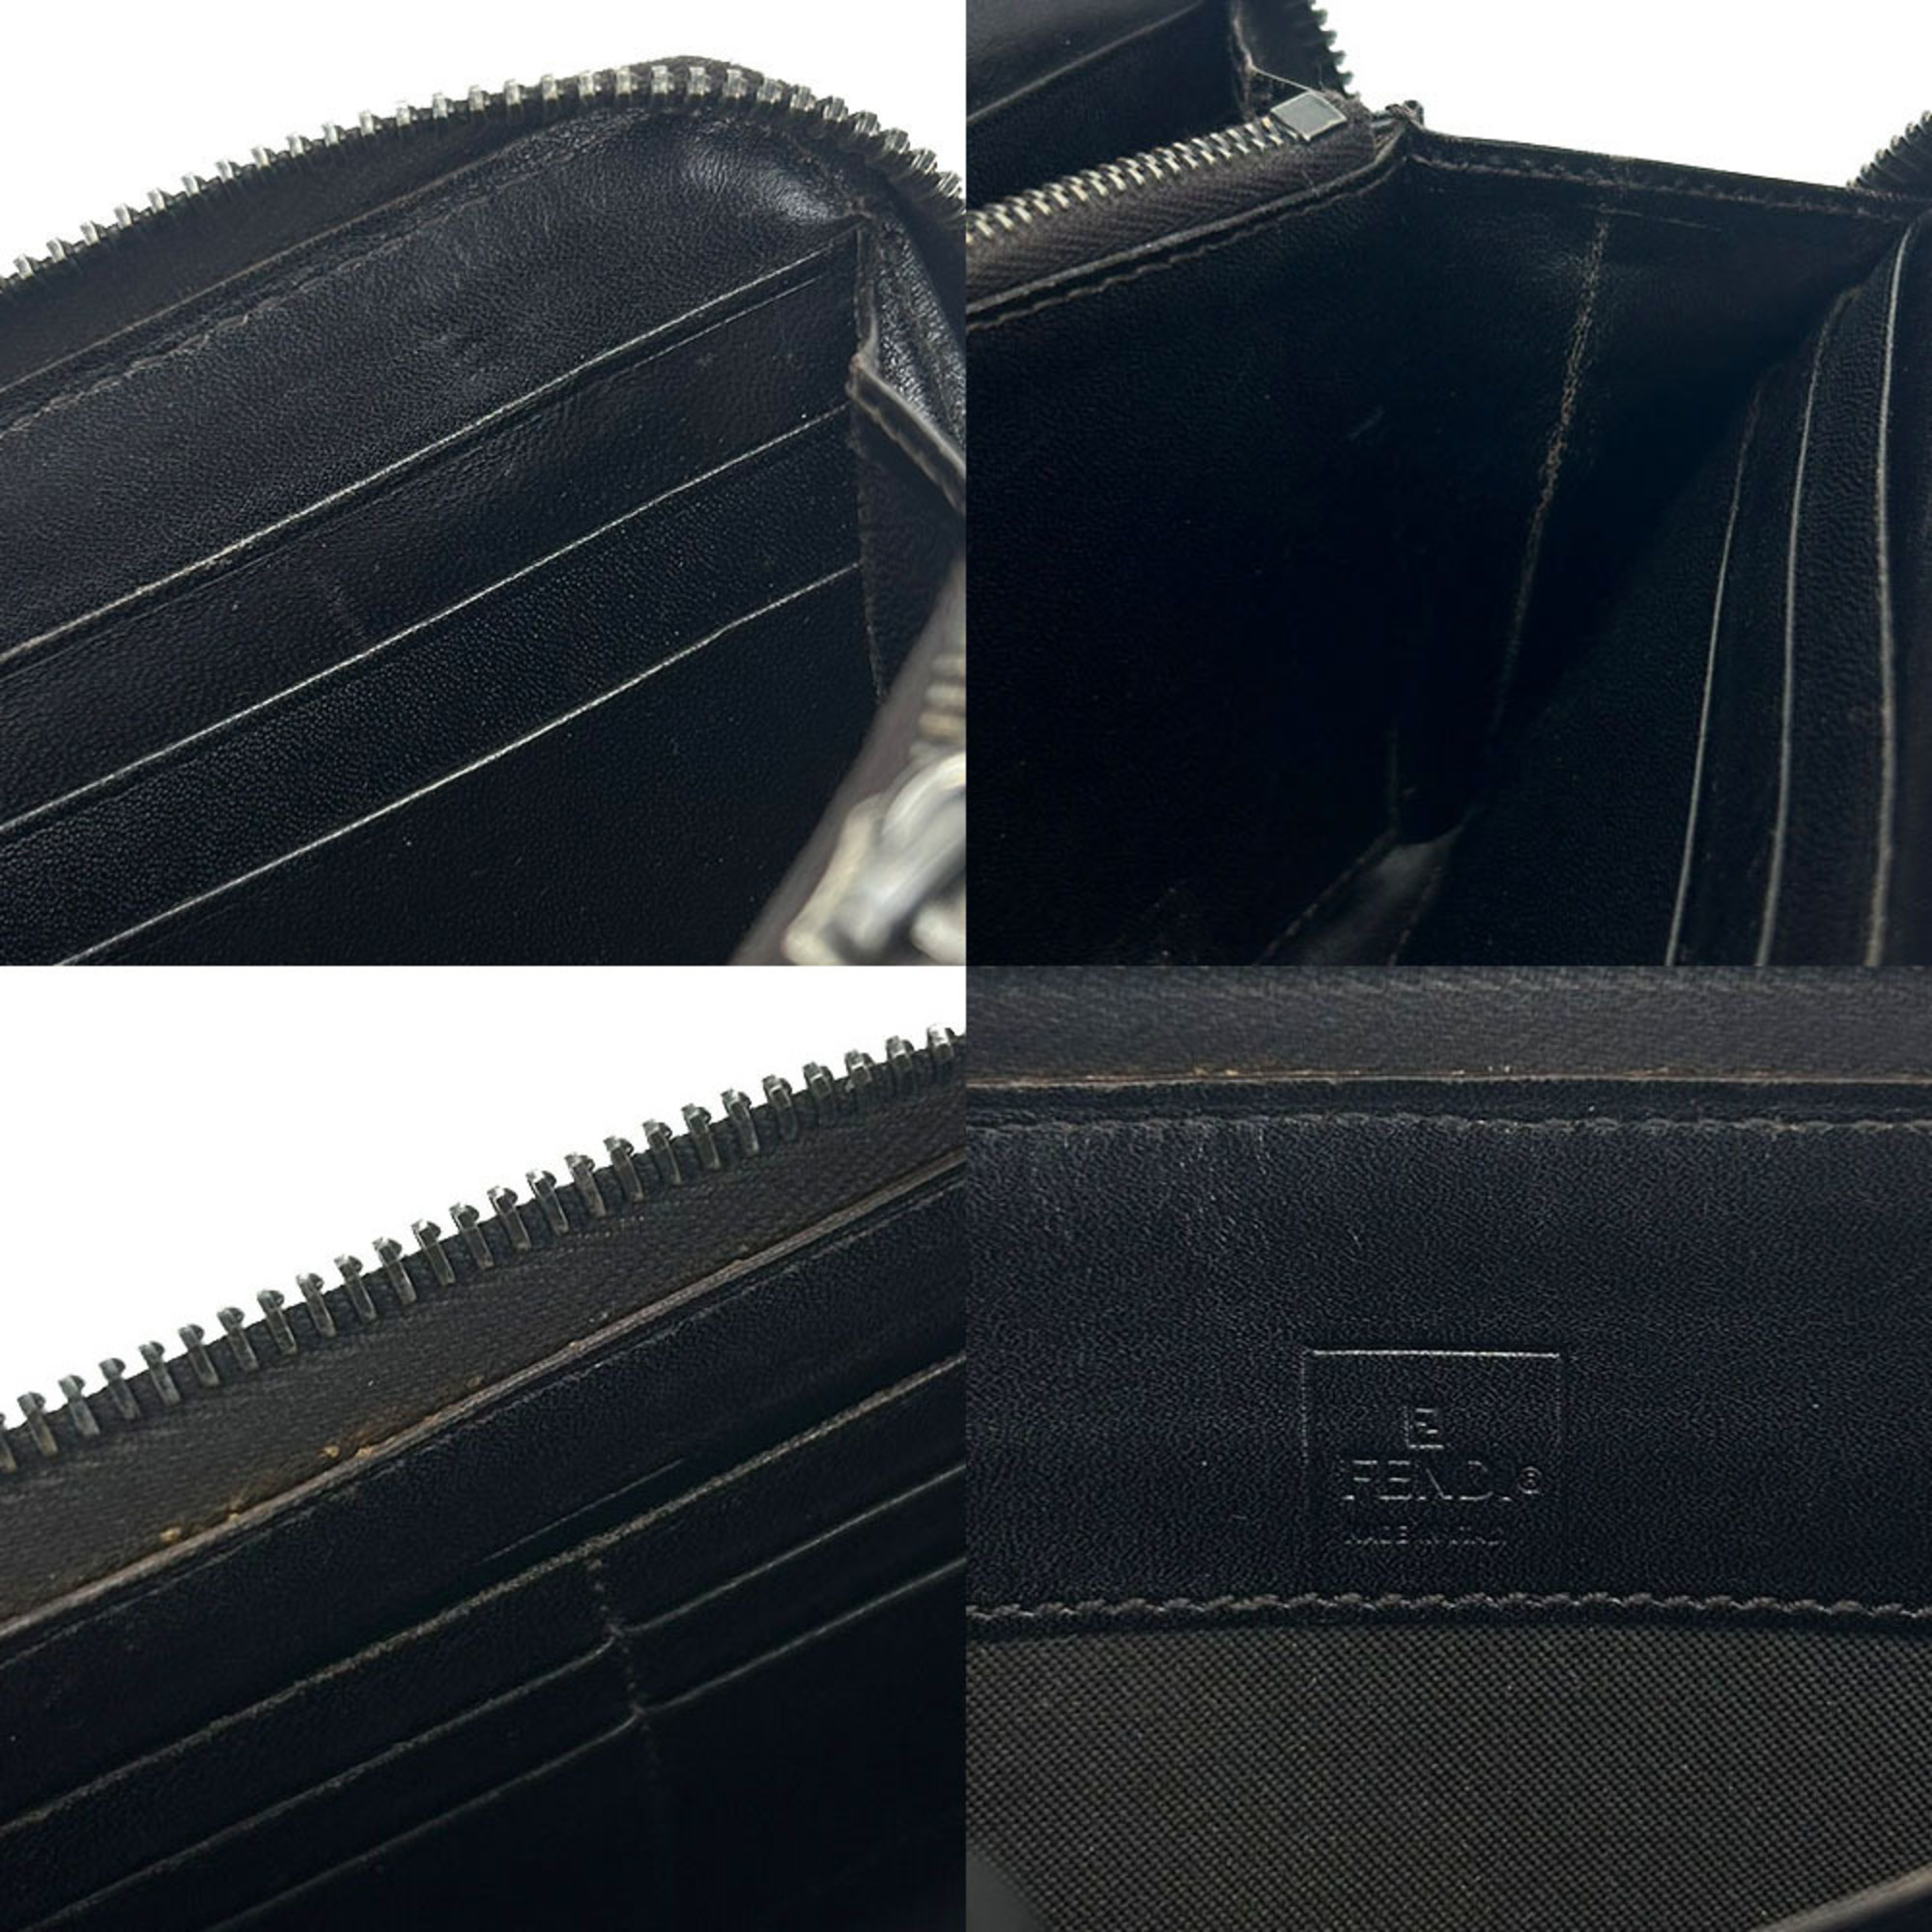 FENDI Zip Around wallet Zucca 8M0024 pattern canvas khaki brown accessory zippy ladies